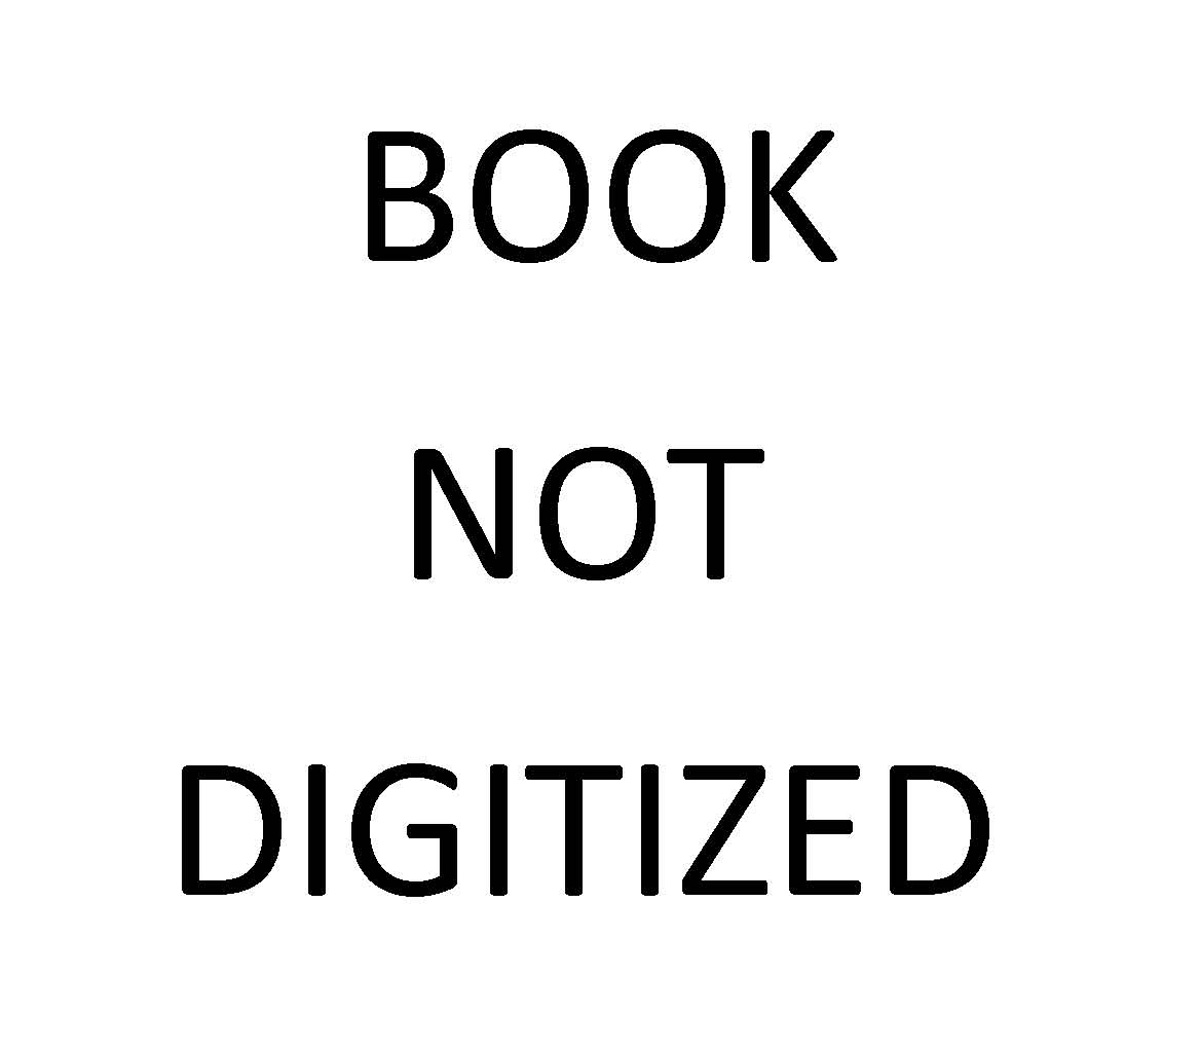 BOOK NOT DIGITIZED.jpg